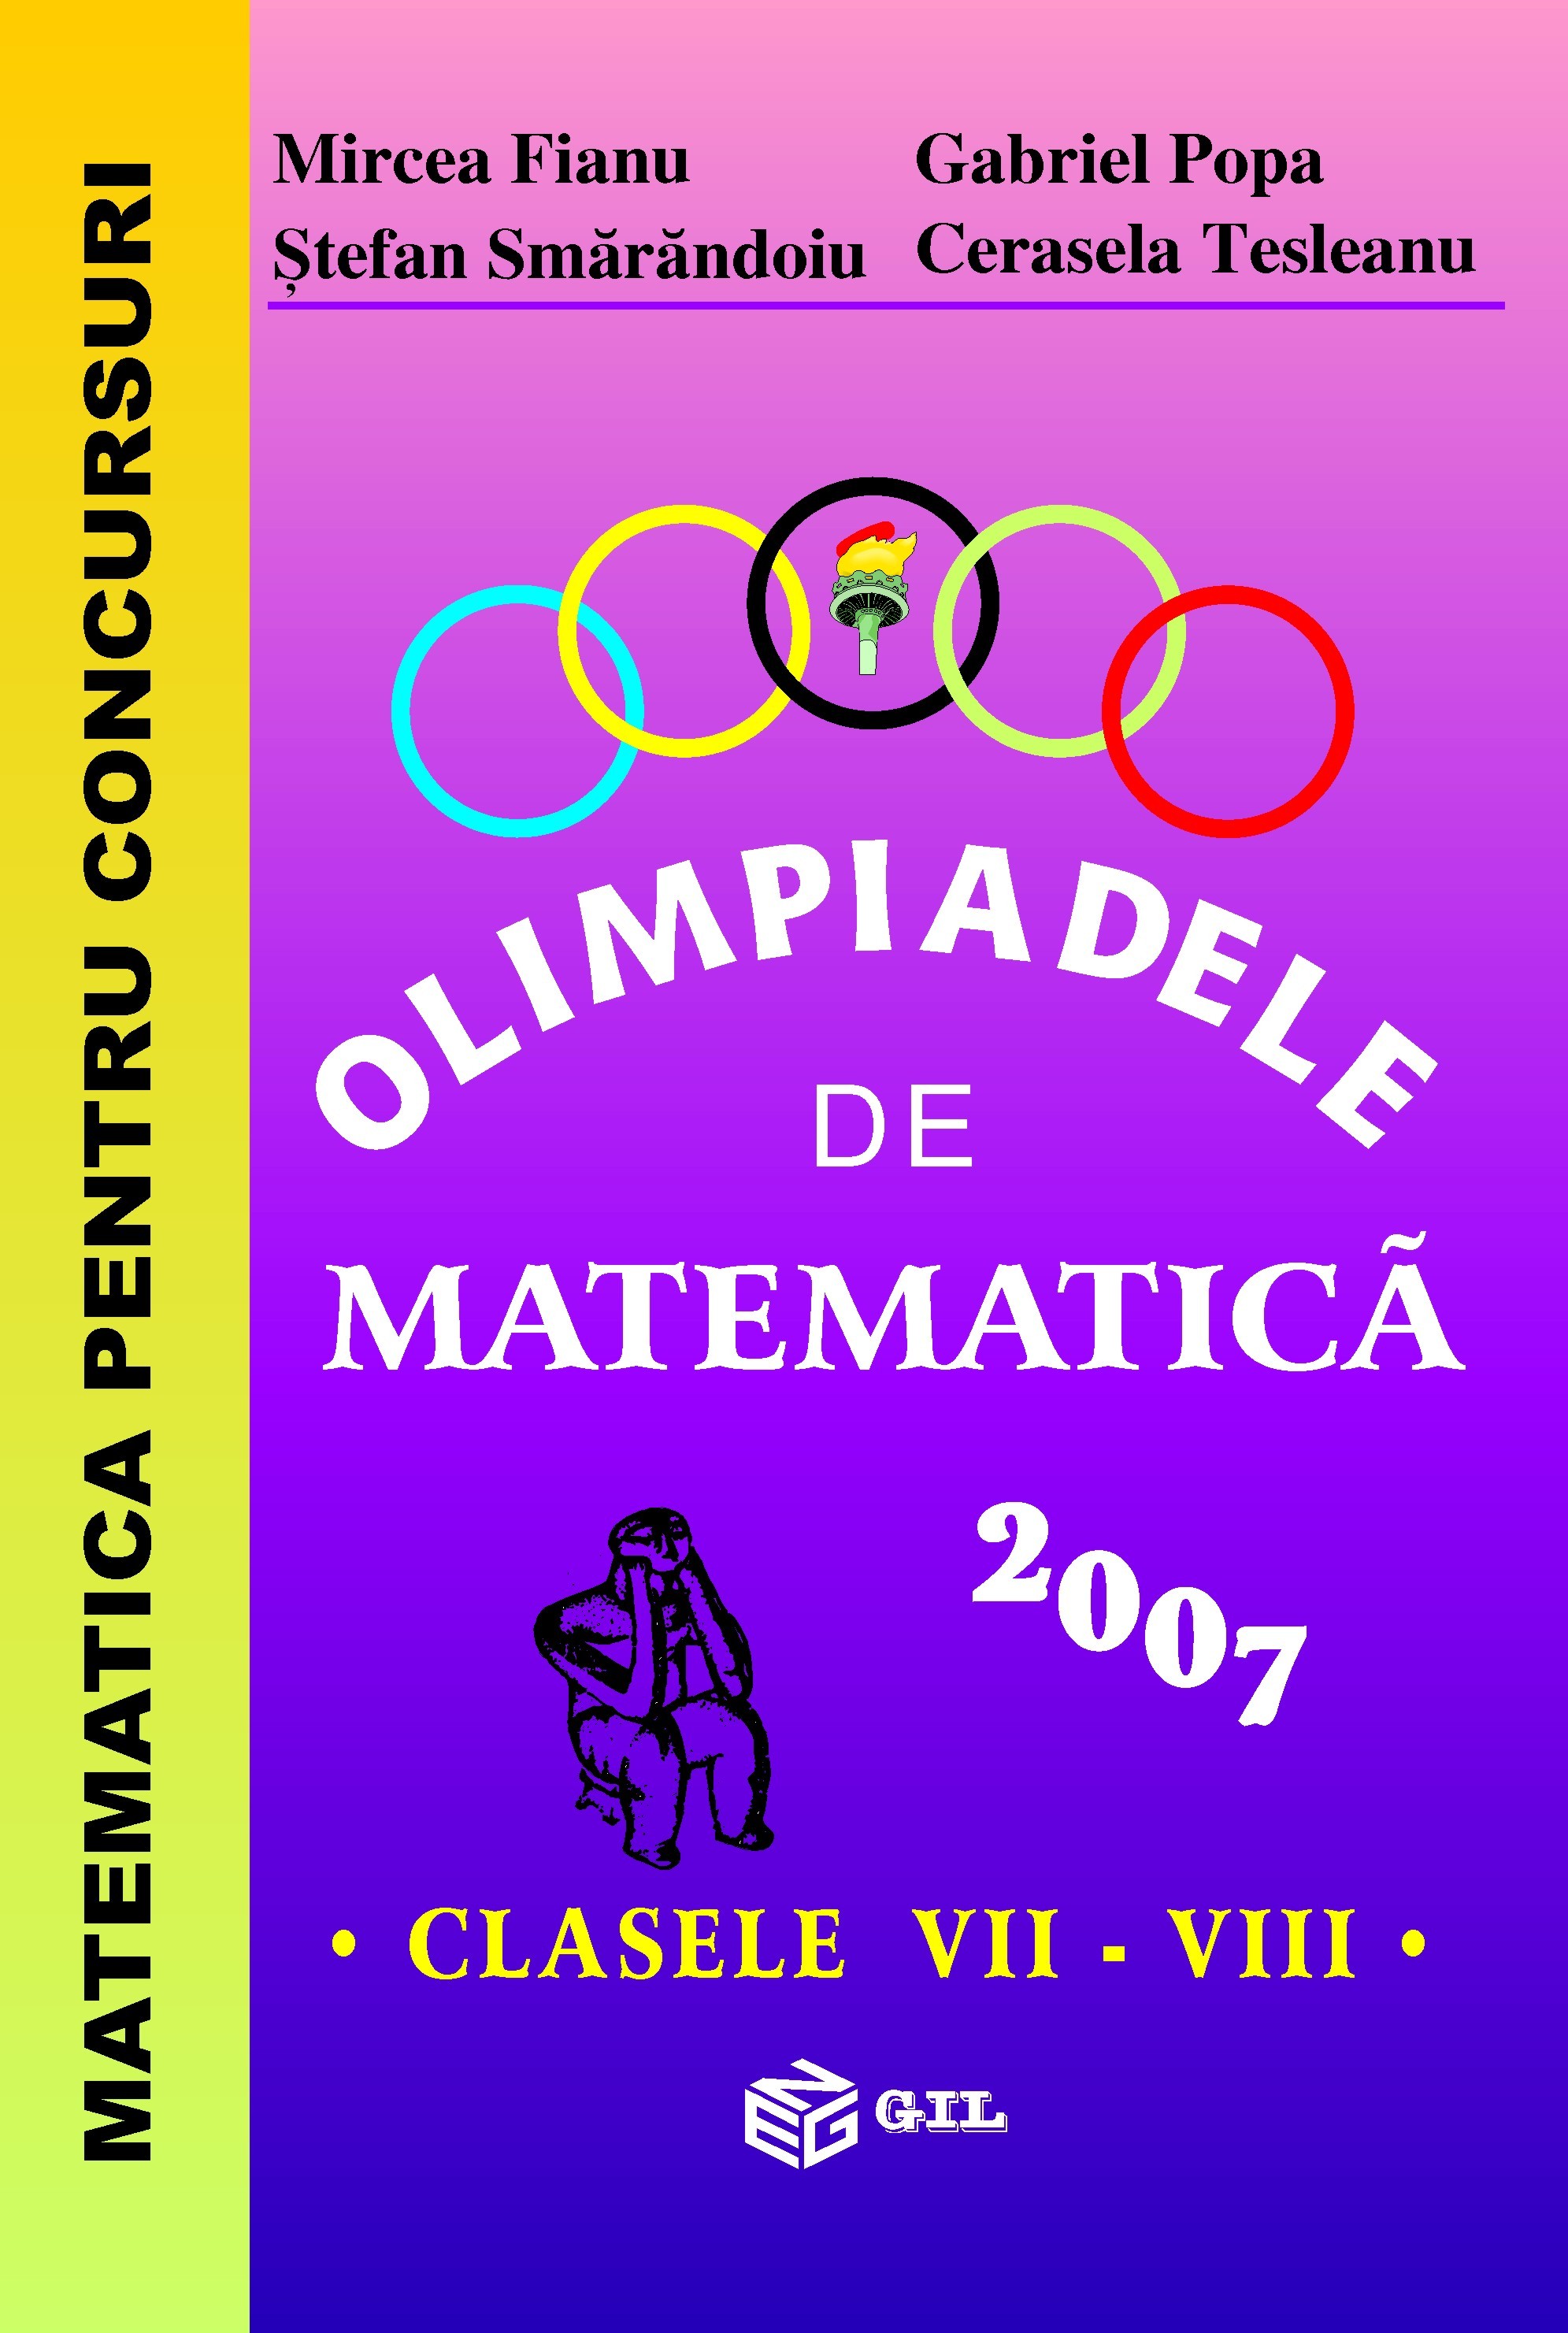 Olimpiadele de matematica - Clasele 7-8 2007 - Mircea Fianu